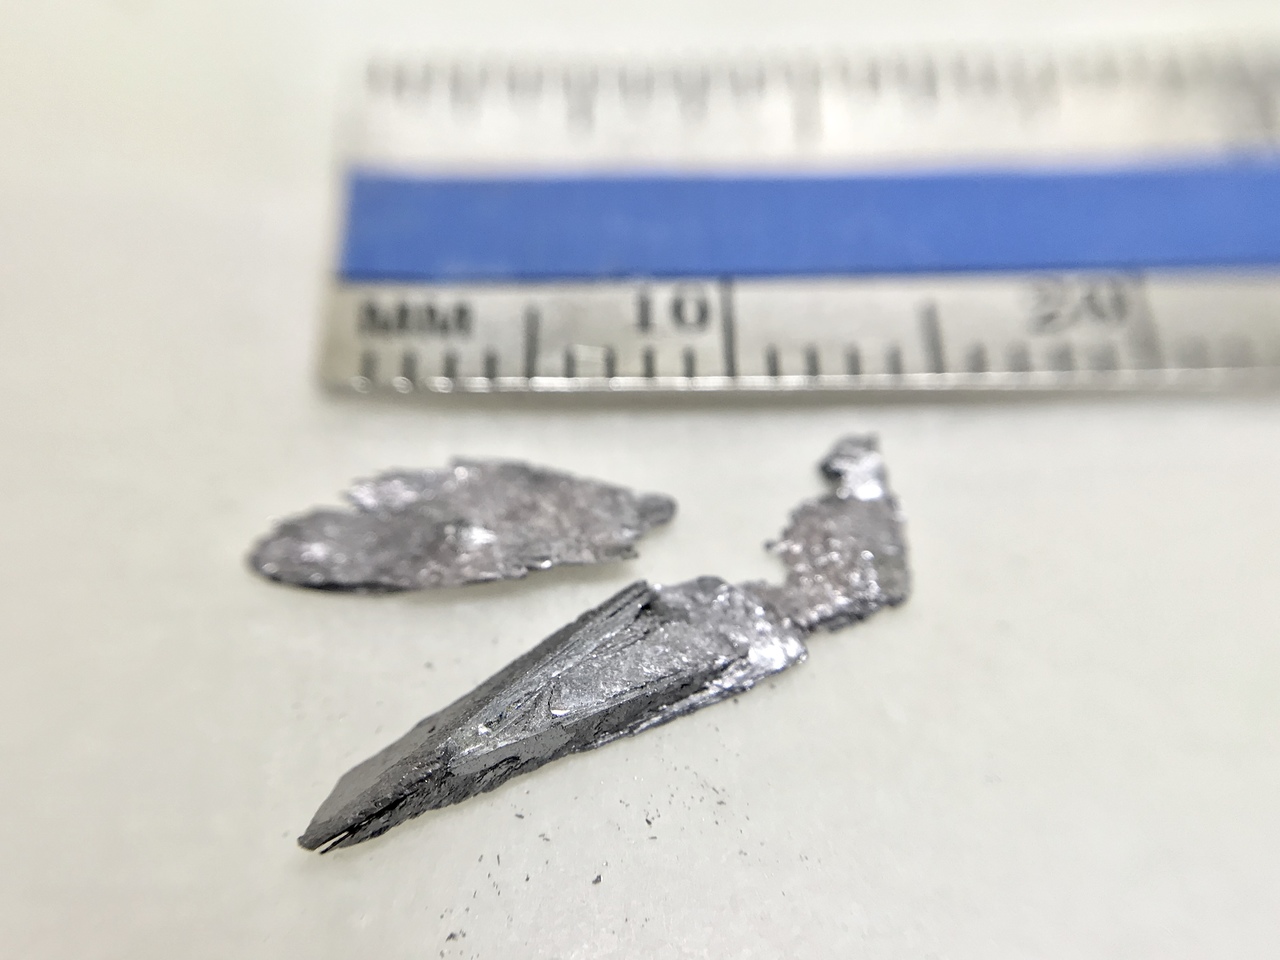 GeTe crystals 碲化锗晶体 (Germanium telluride)